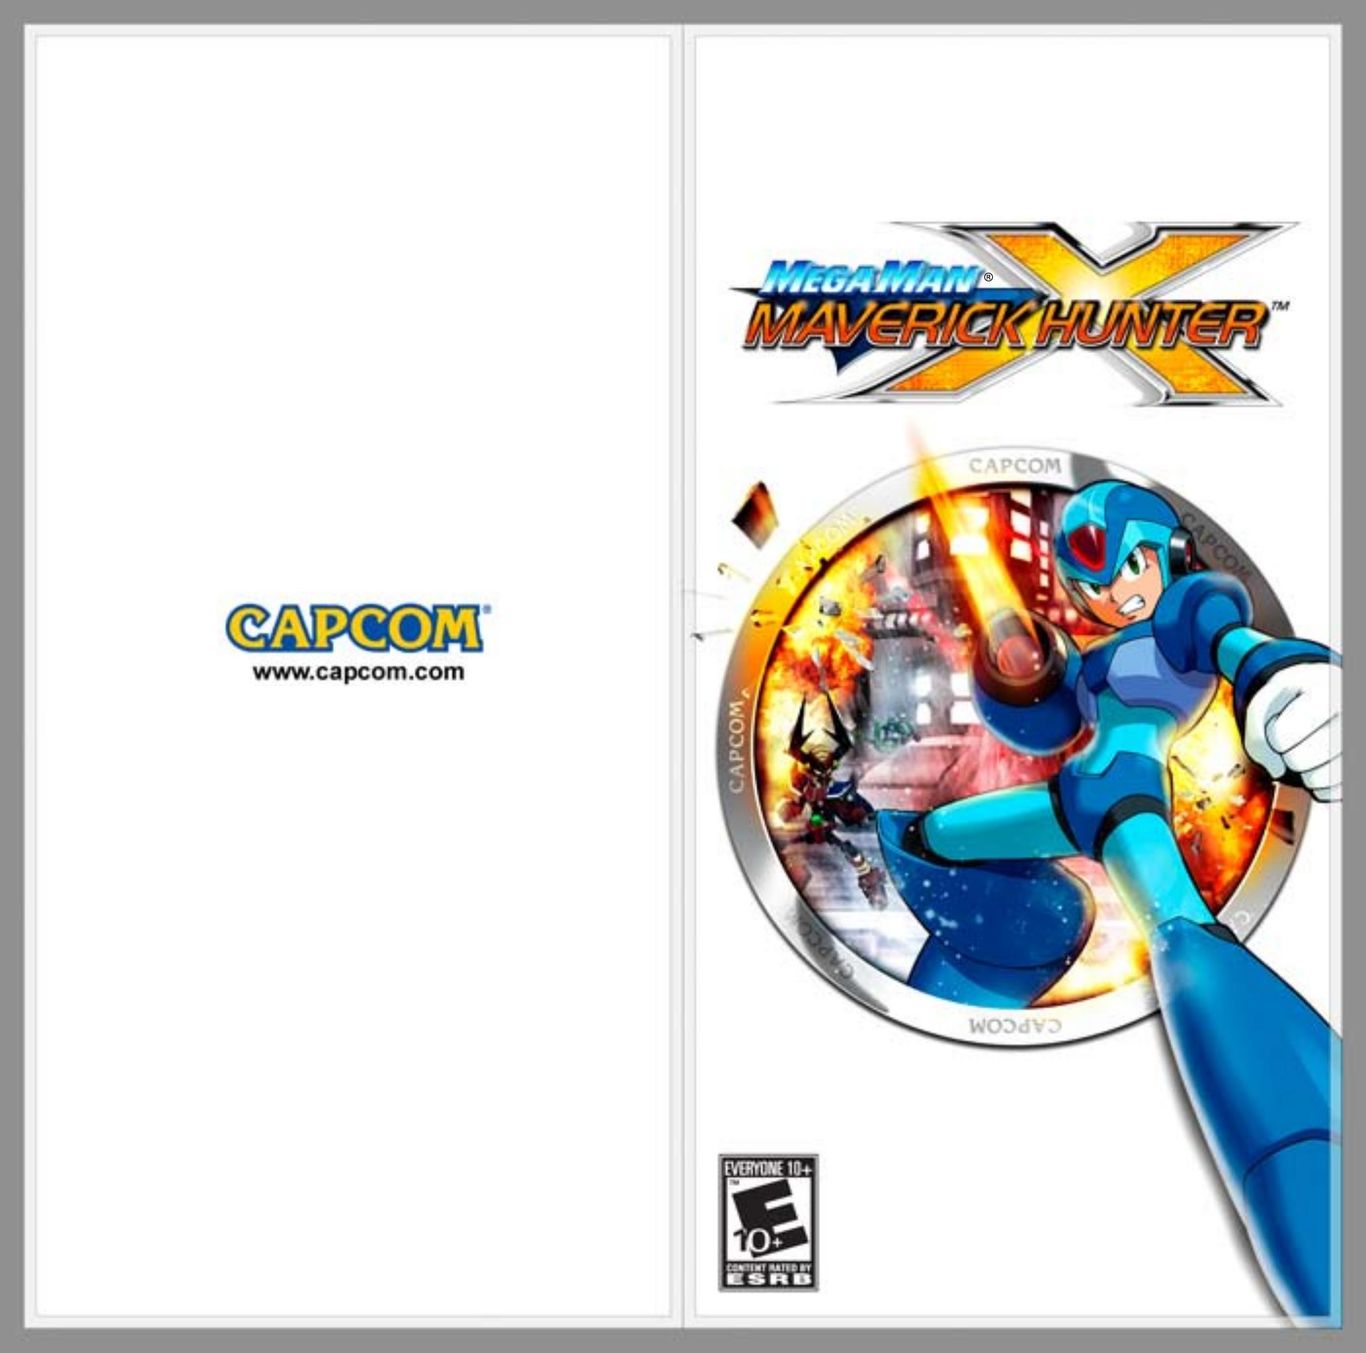 Capcom PlayStationPortable Video Games User Manual